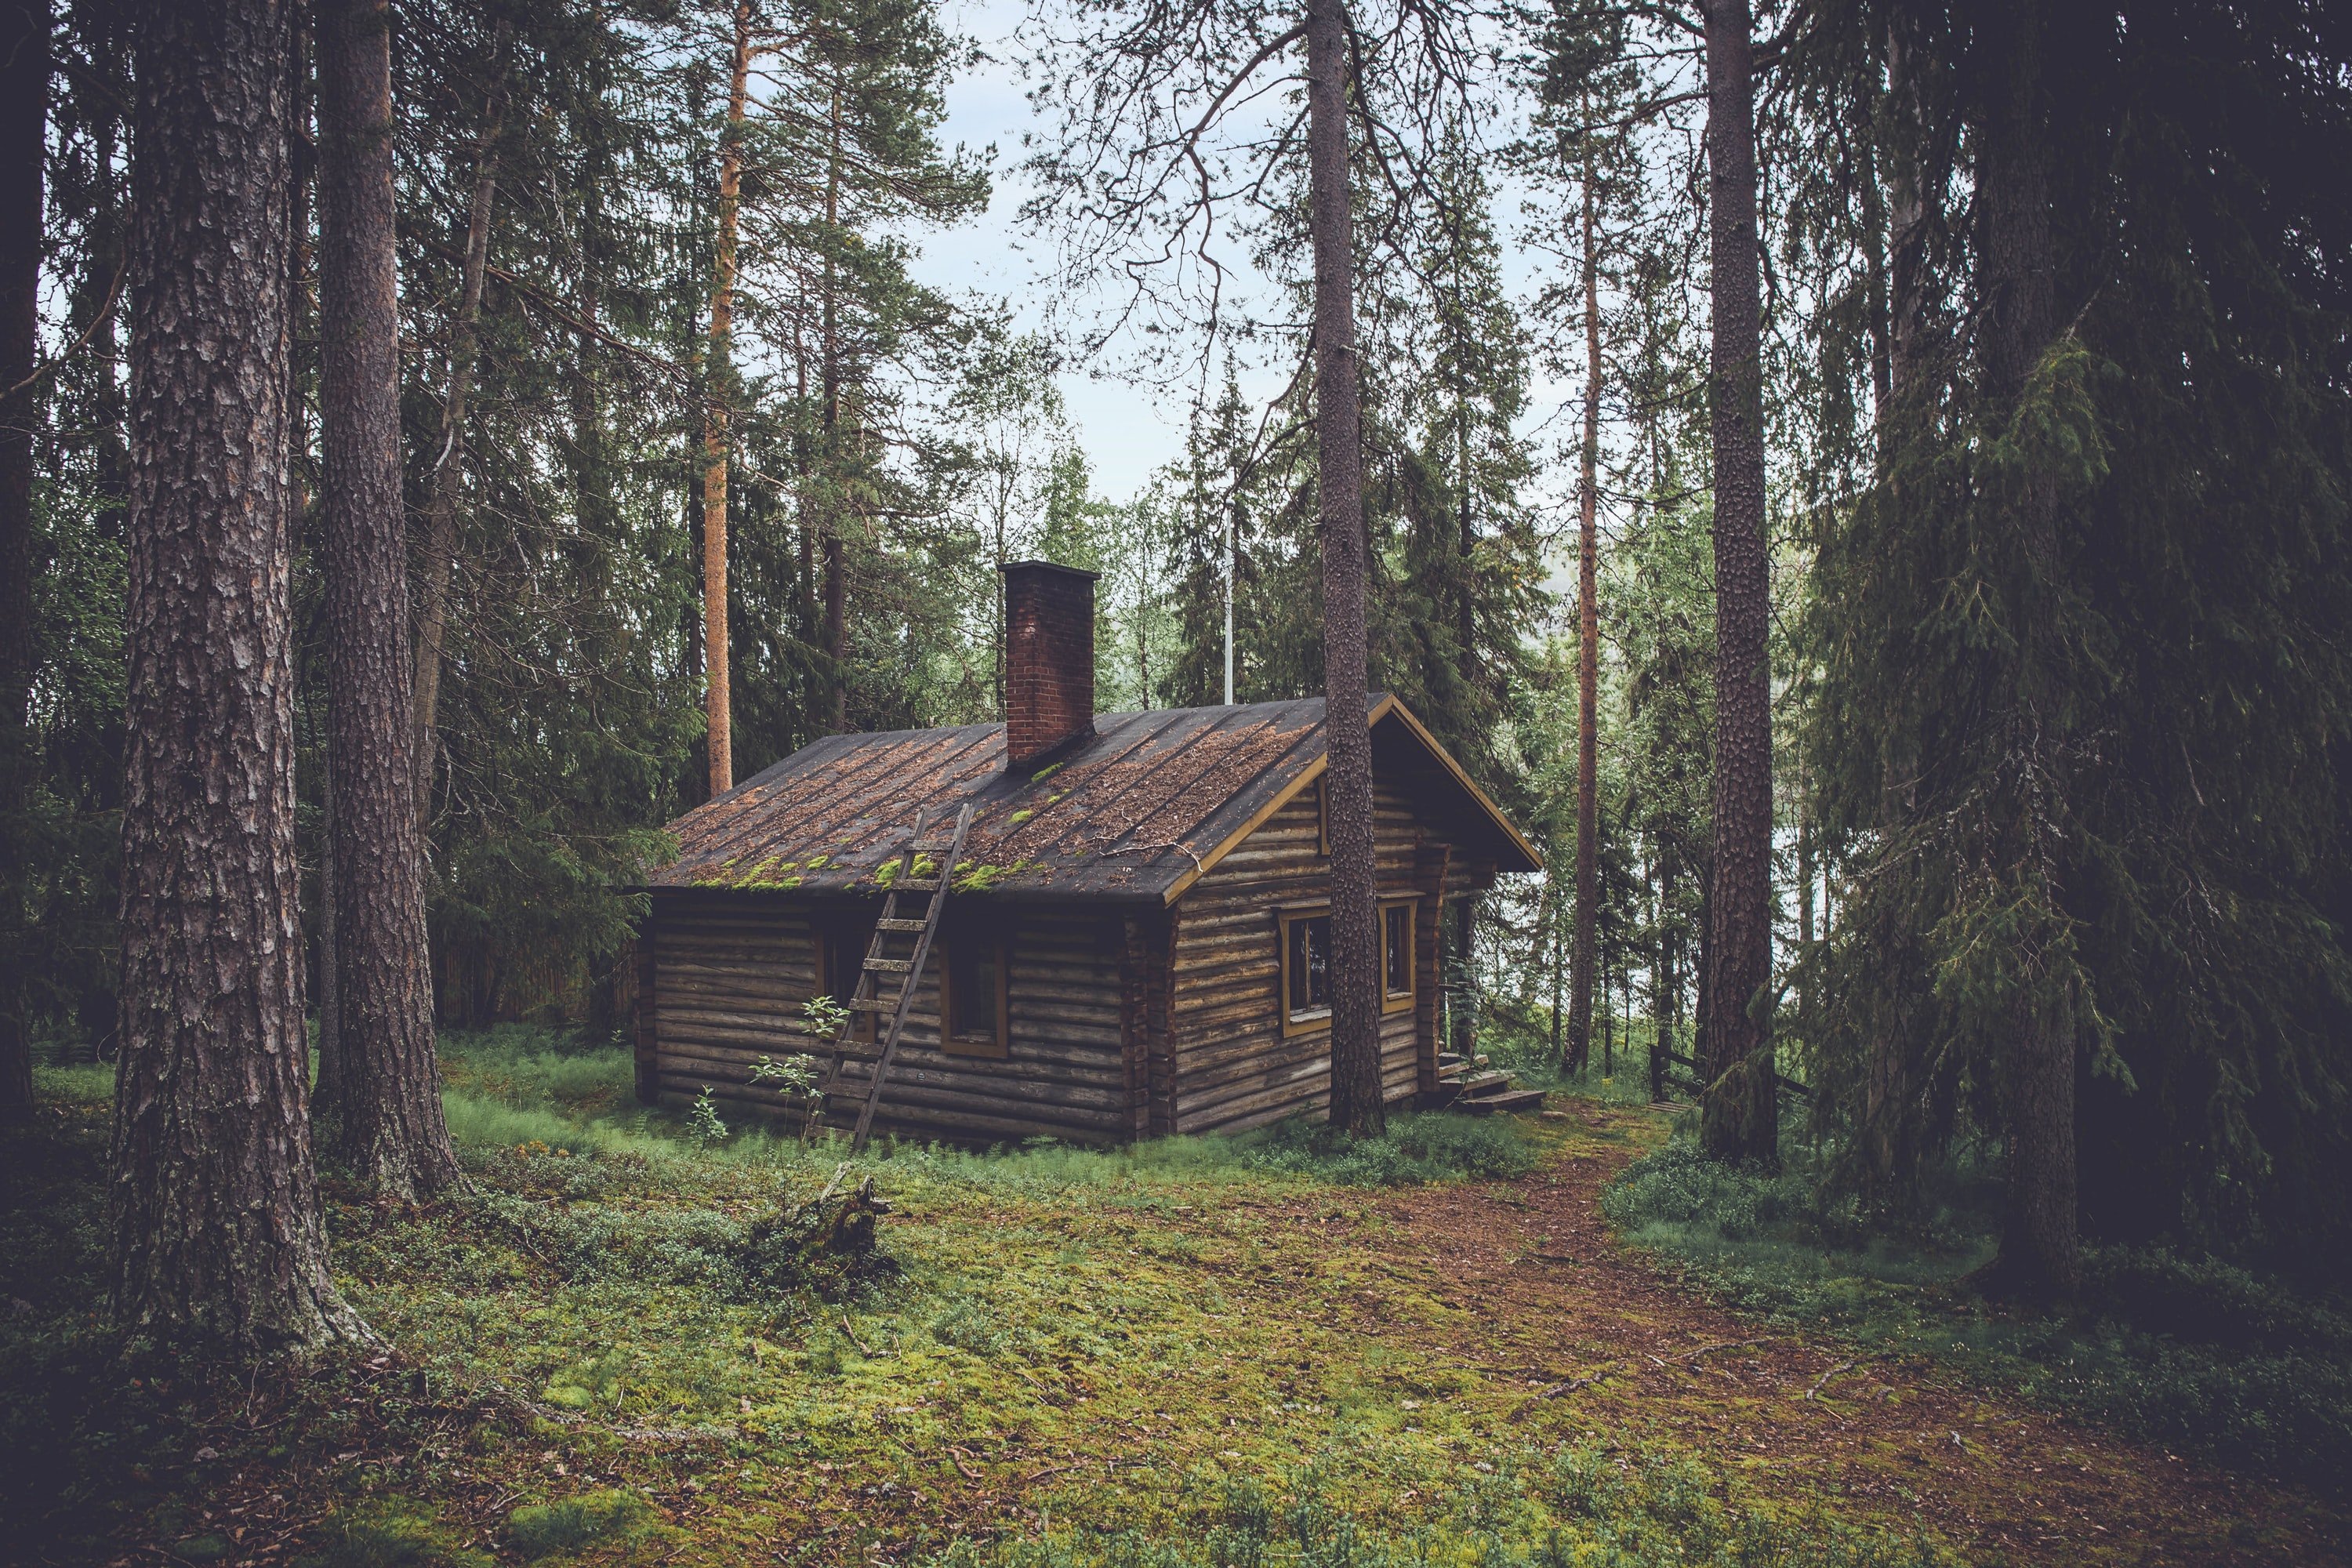 Mike folgte den Fußspuren des Jungen und erreichte eine alte Hütte im Wald. | Quelle: Unsplash